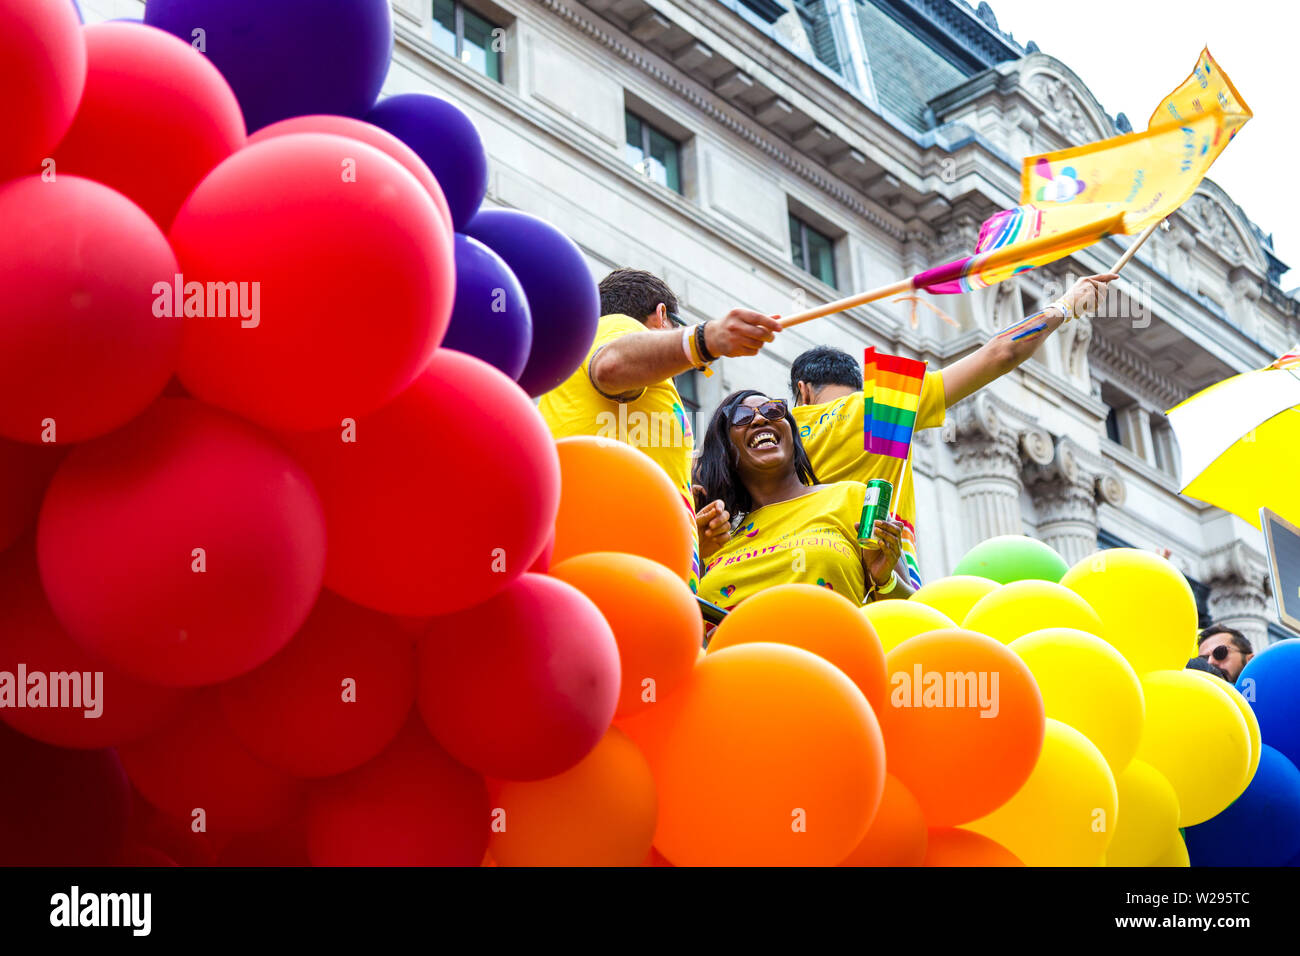 Vom 6. Juli 2019 - Menschen feiern Stolz auf einen Schwimmer umgeben von bunten Luftballons, London Pride Parade, Großbritannien Stockfoto